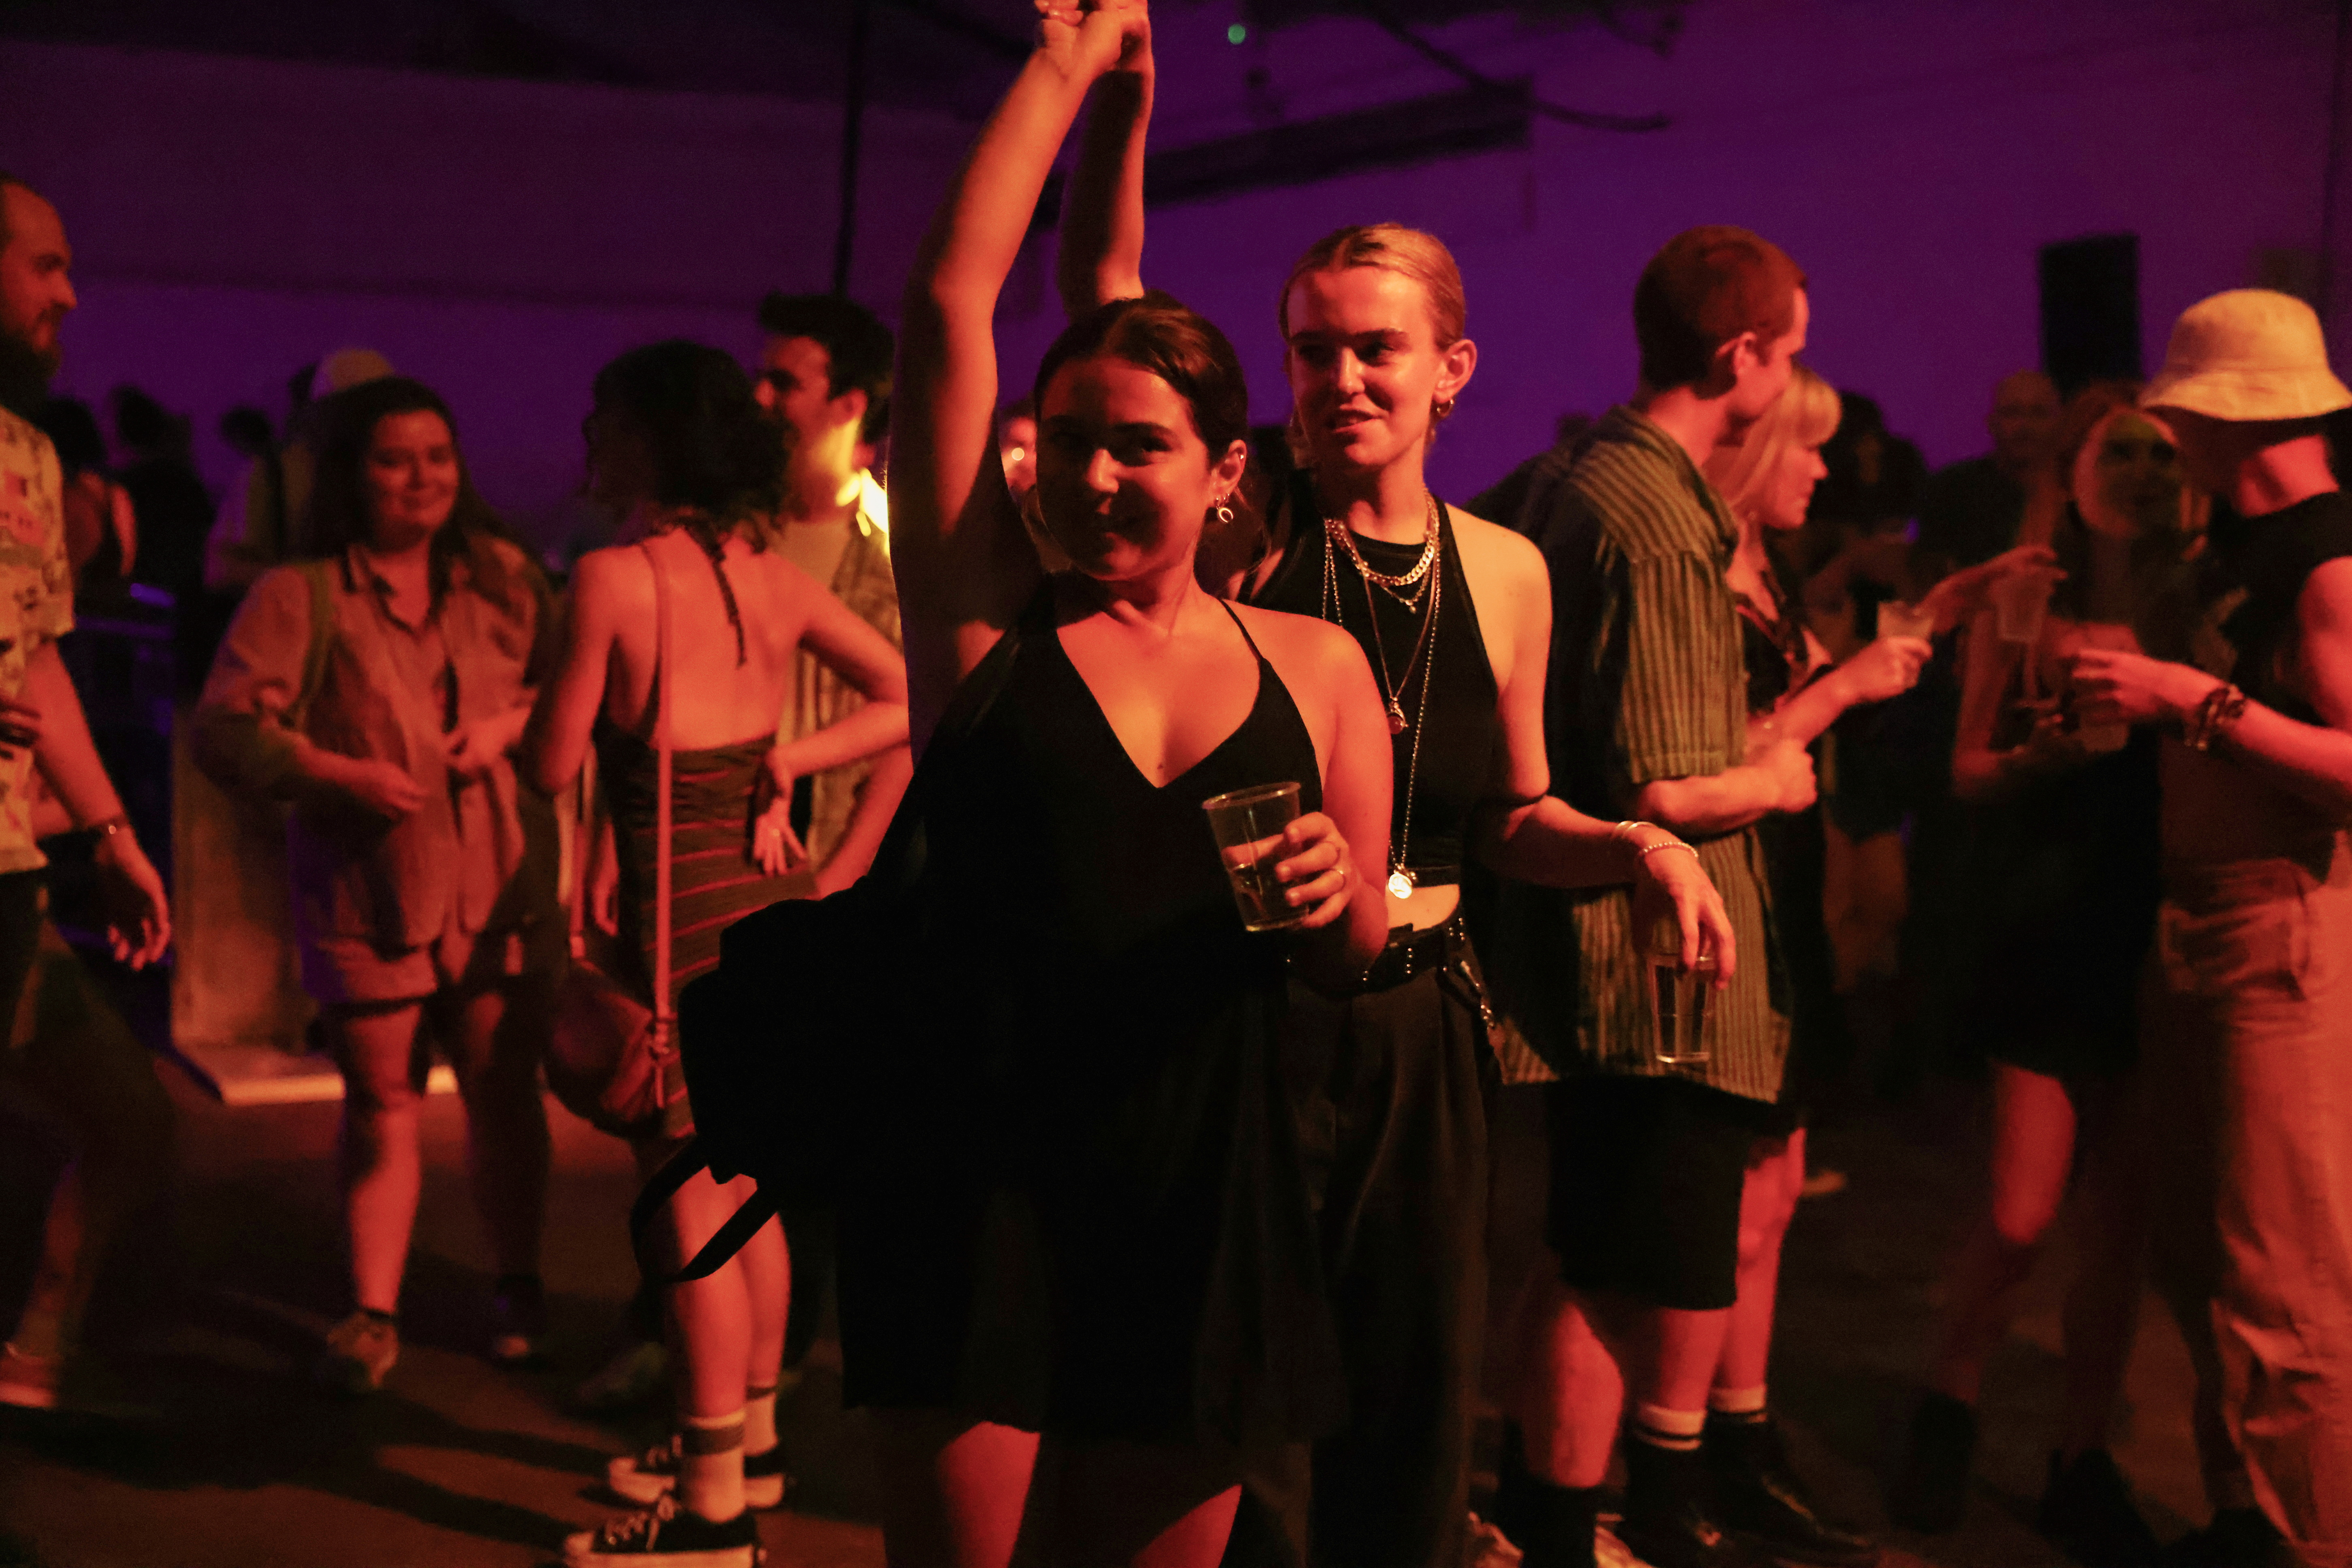 Jóvenes bailan en una fiesta llamada "00:01", en el club Oval Space, en Londres